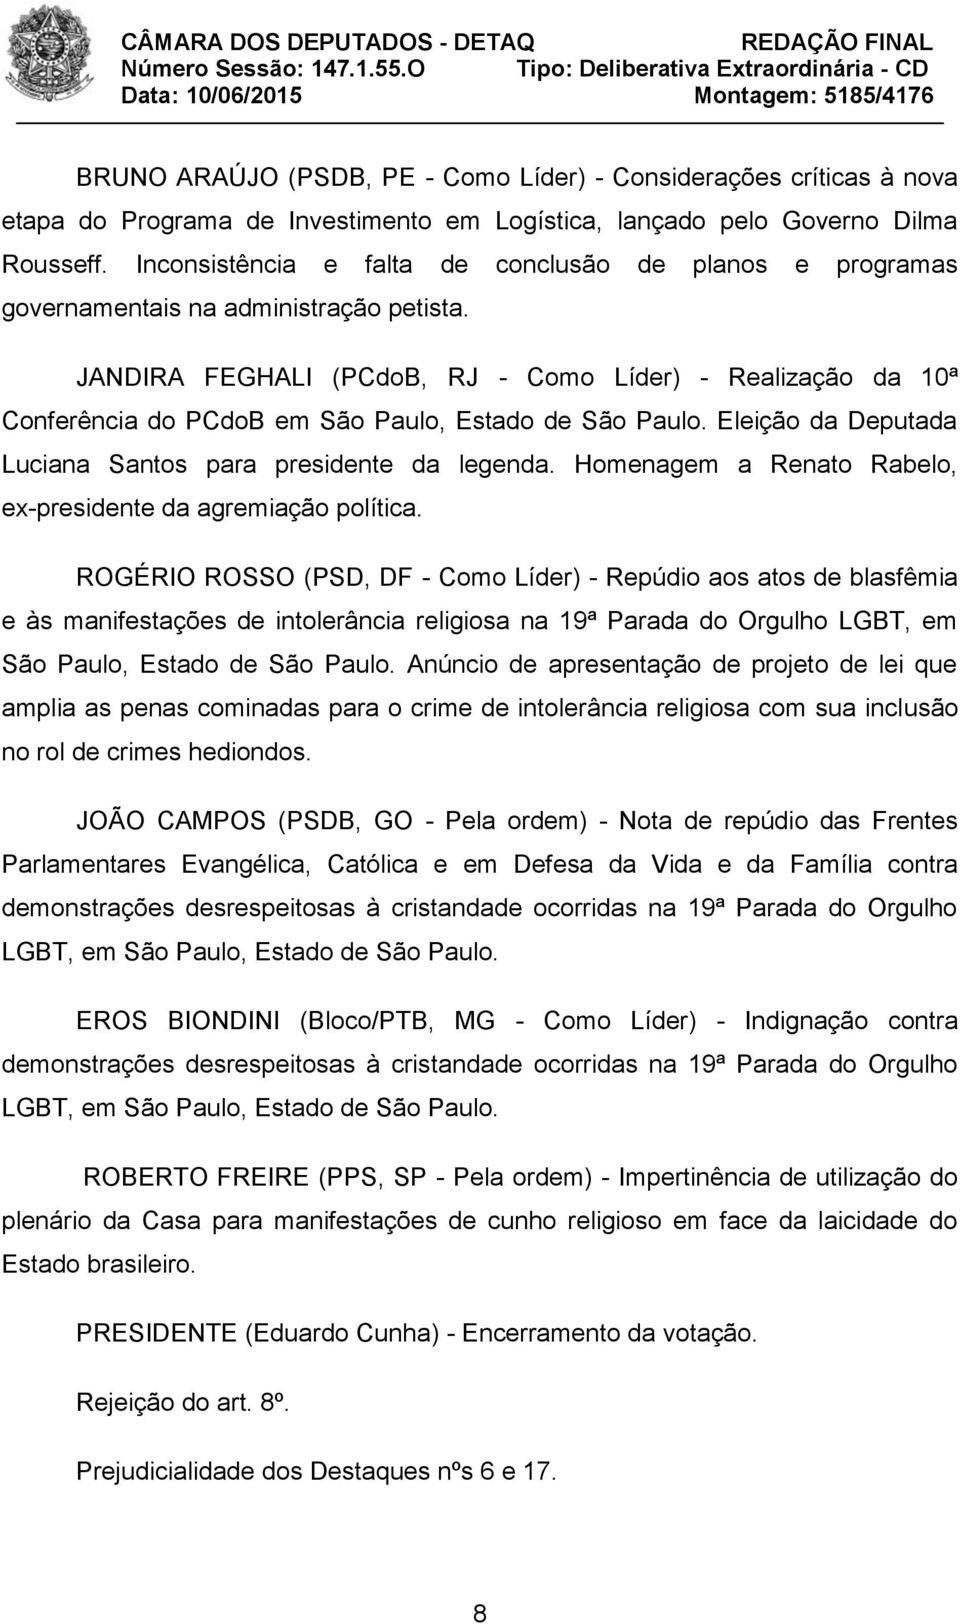 JANDIRA FEGHALI (PCdoB, RJ - Como Líder) - Realização da 10ª Conferência do PCdoB em São Paulo, Estado de São Paulo. Eleição da Deputada Luciana Santos para presidente da legenda.